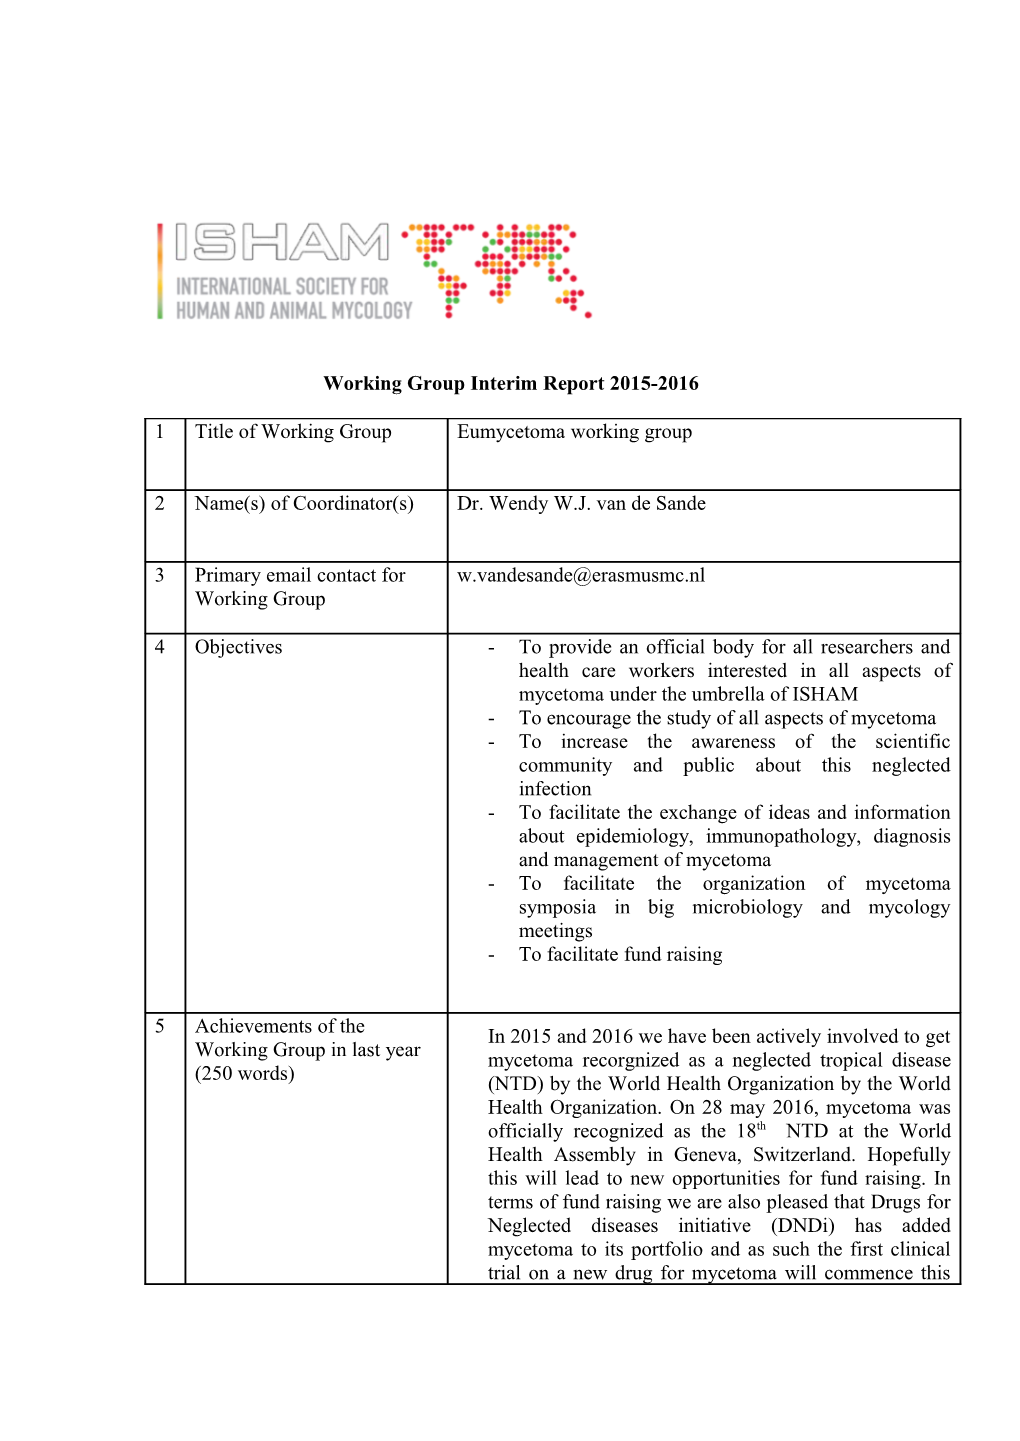 Interim Report of the Working Groups Under ISHAM